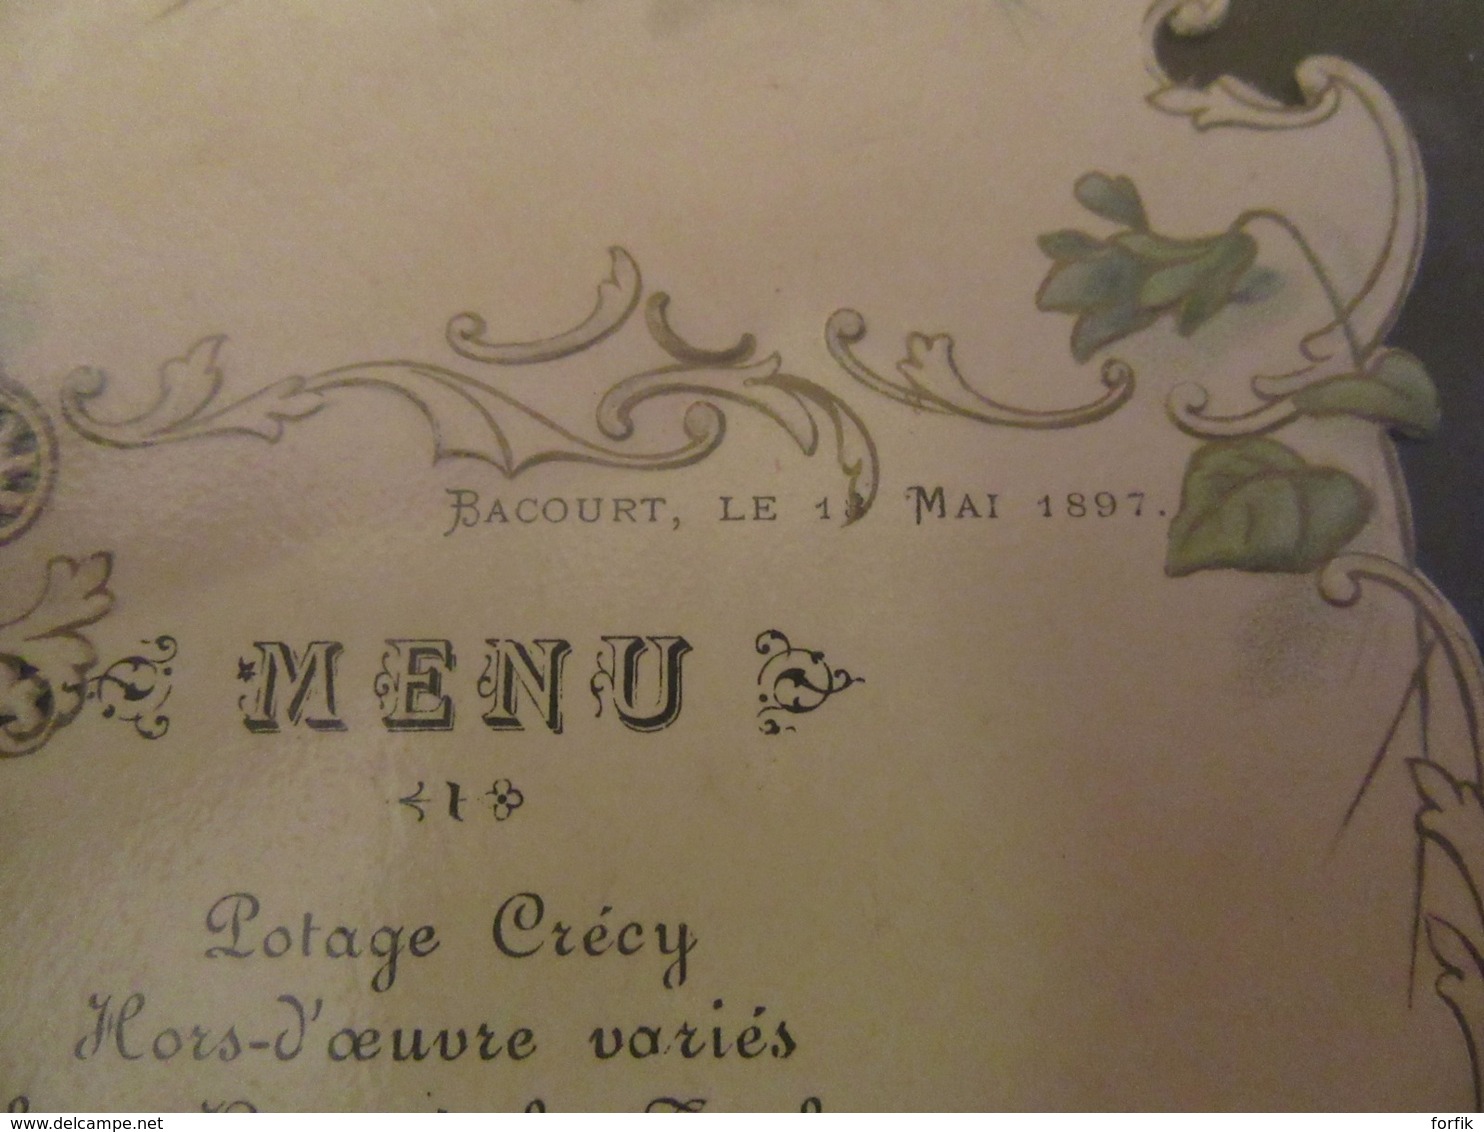 Joli Menu Ancien - A Bacourt, Le 13 Mai 1897 - Menus